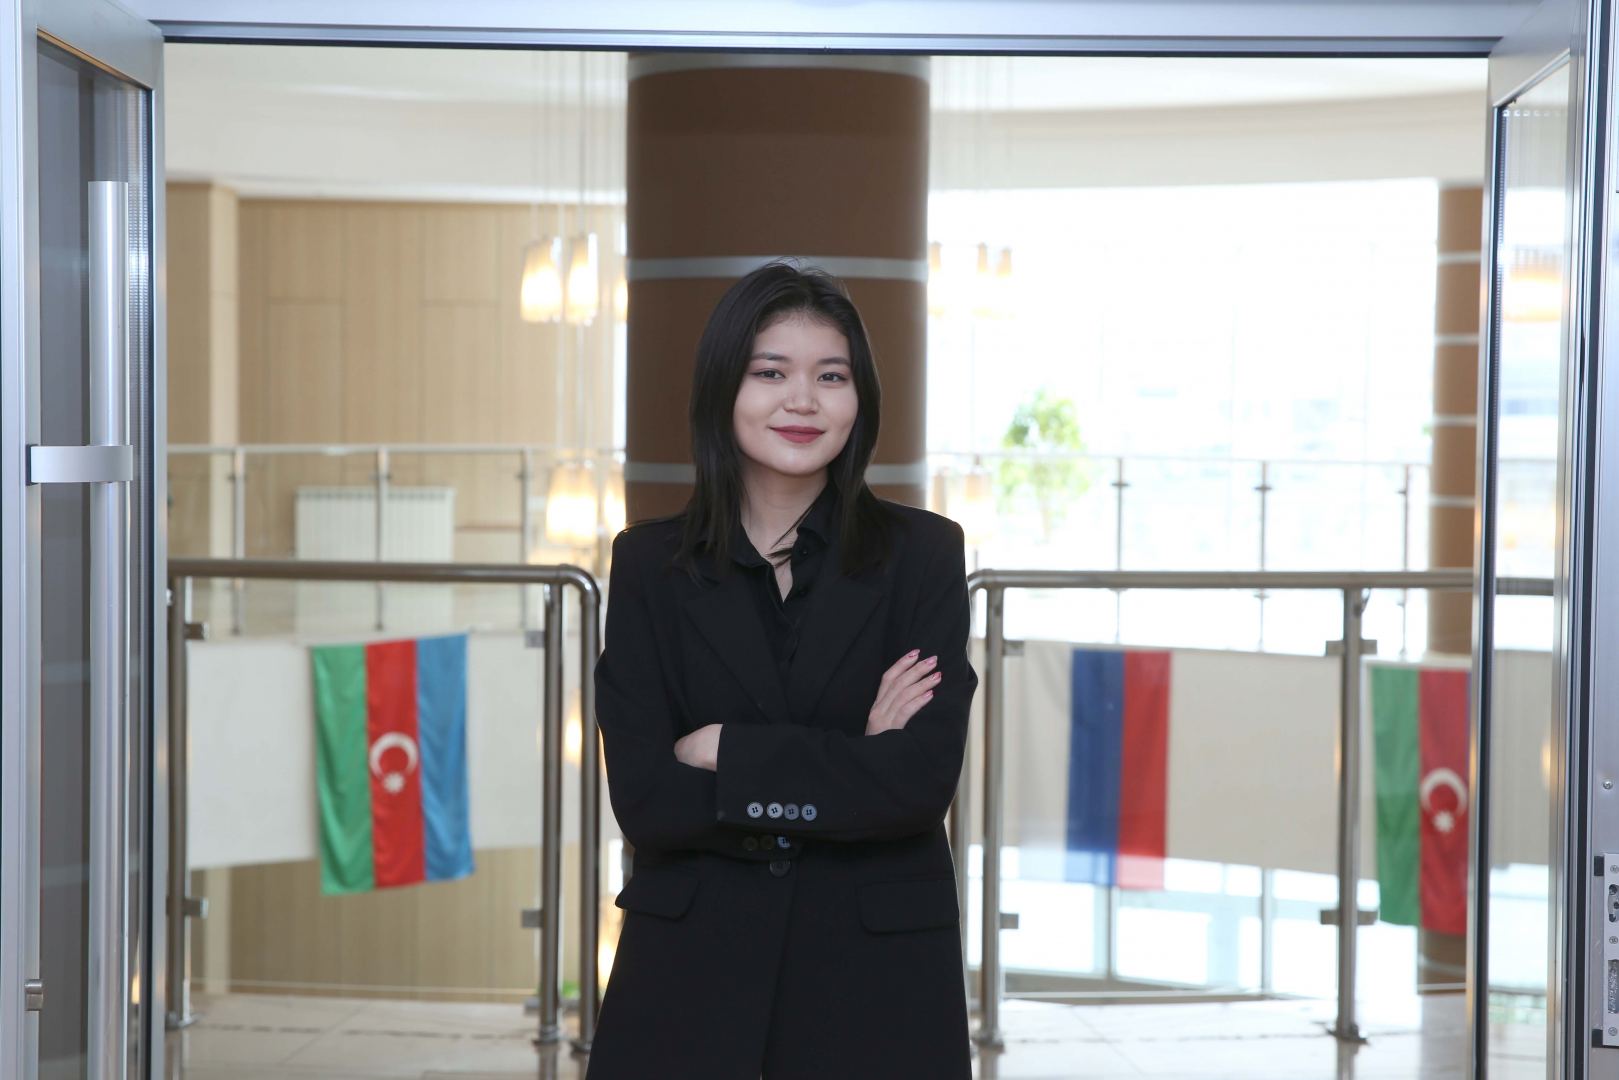 Студентка БВШН из Казахстана: «Этот вуз открывает много возможностей для выпускников»